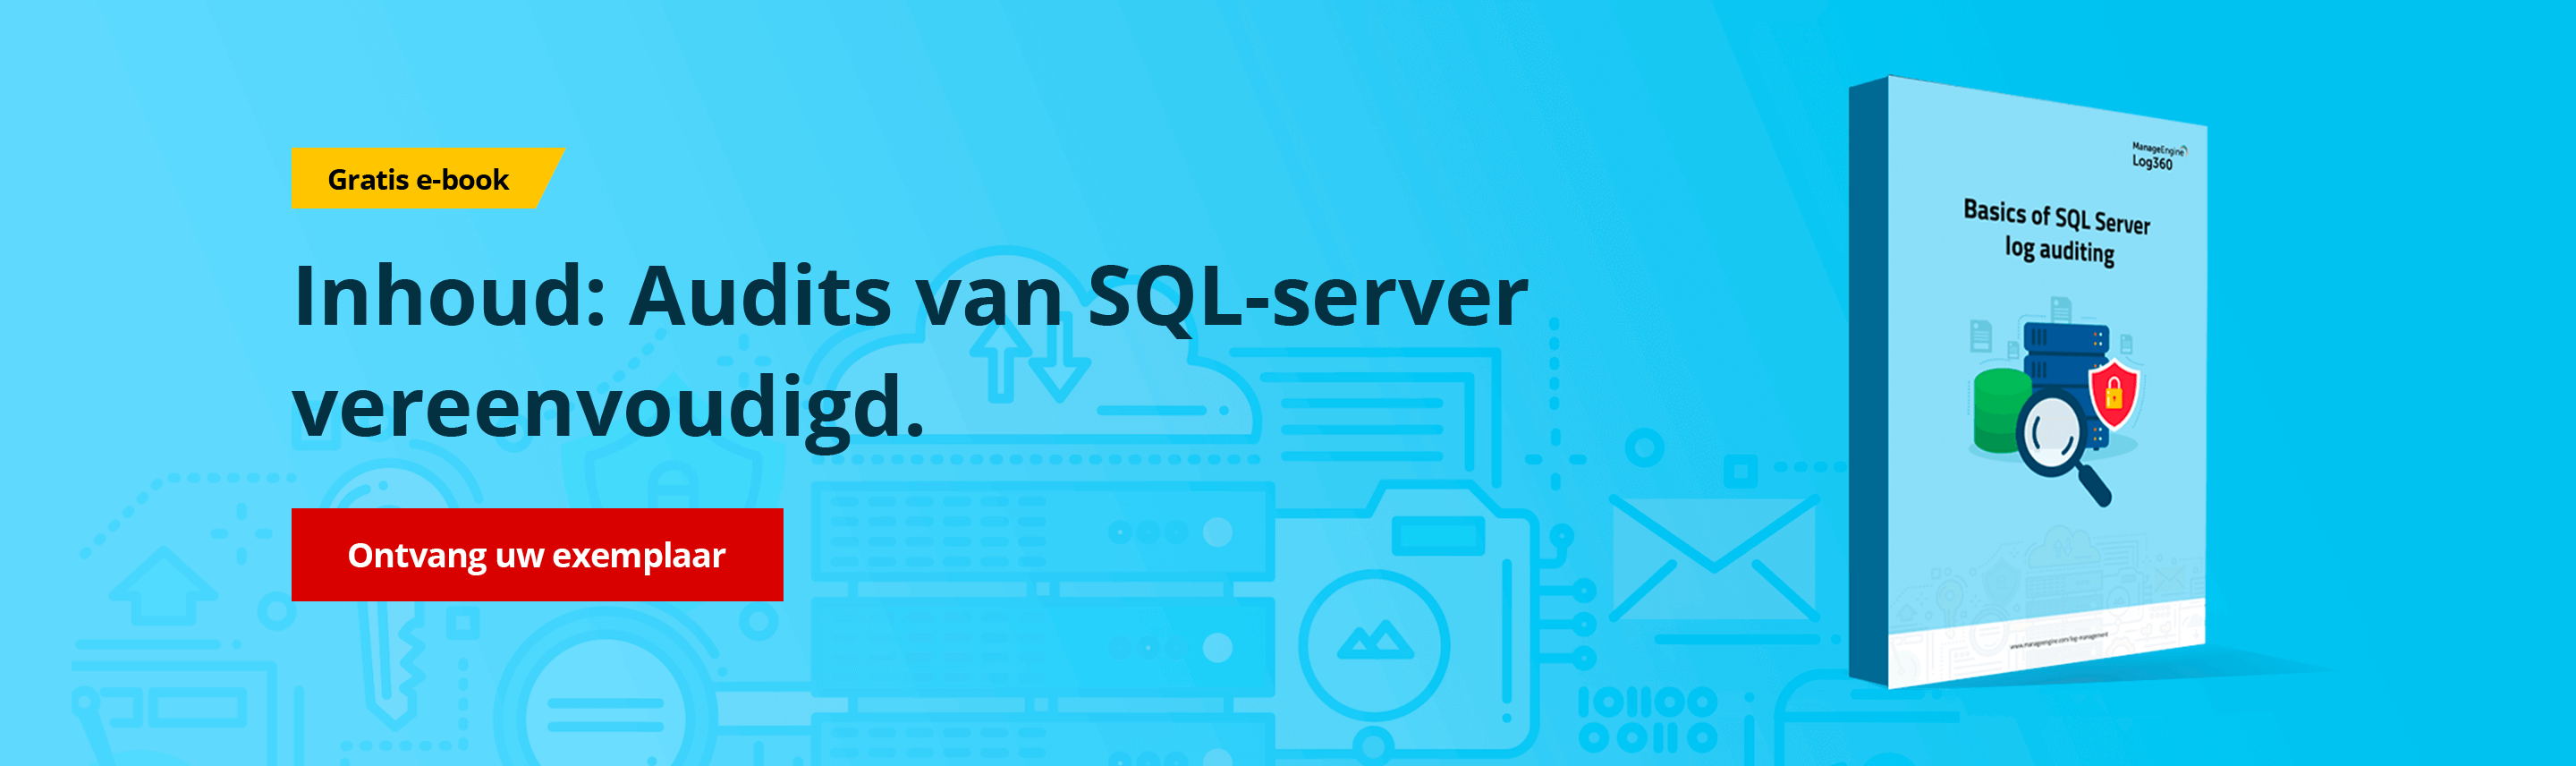 Zorg voor beveiliging van SQL-server en conformiteit